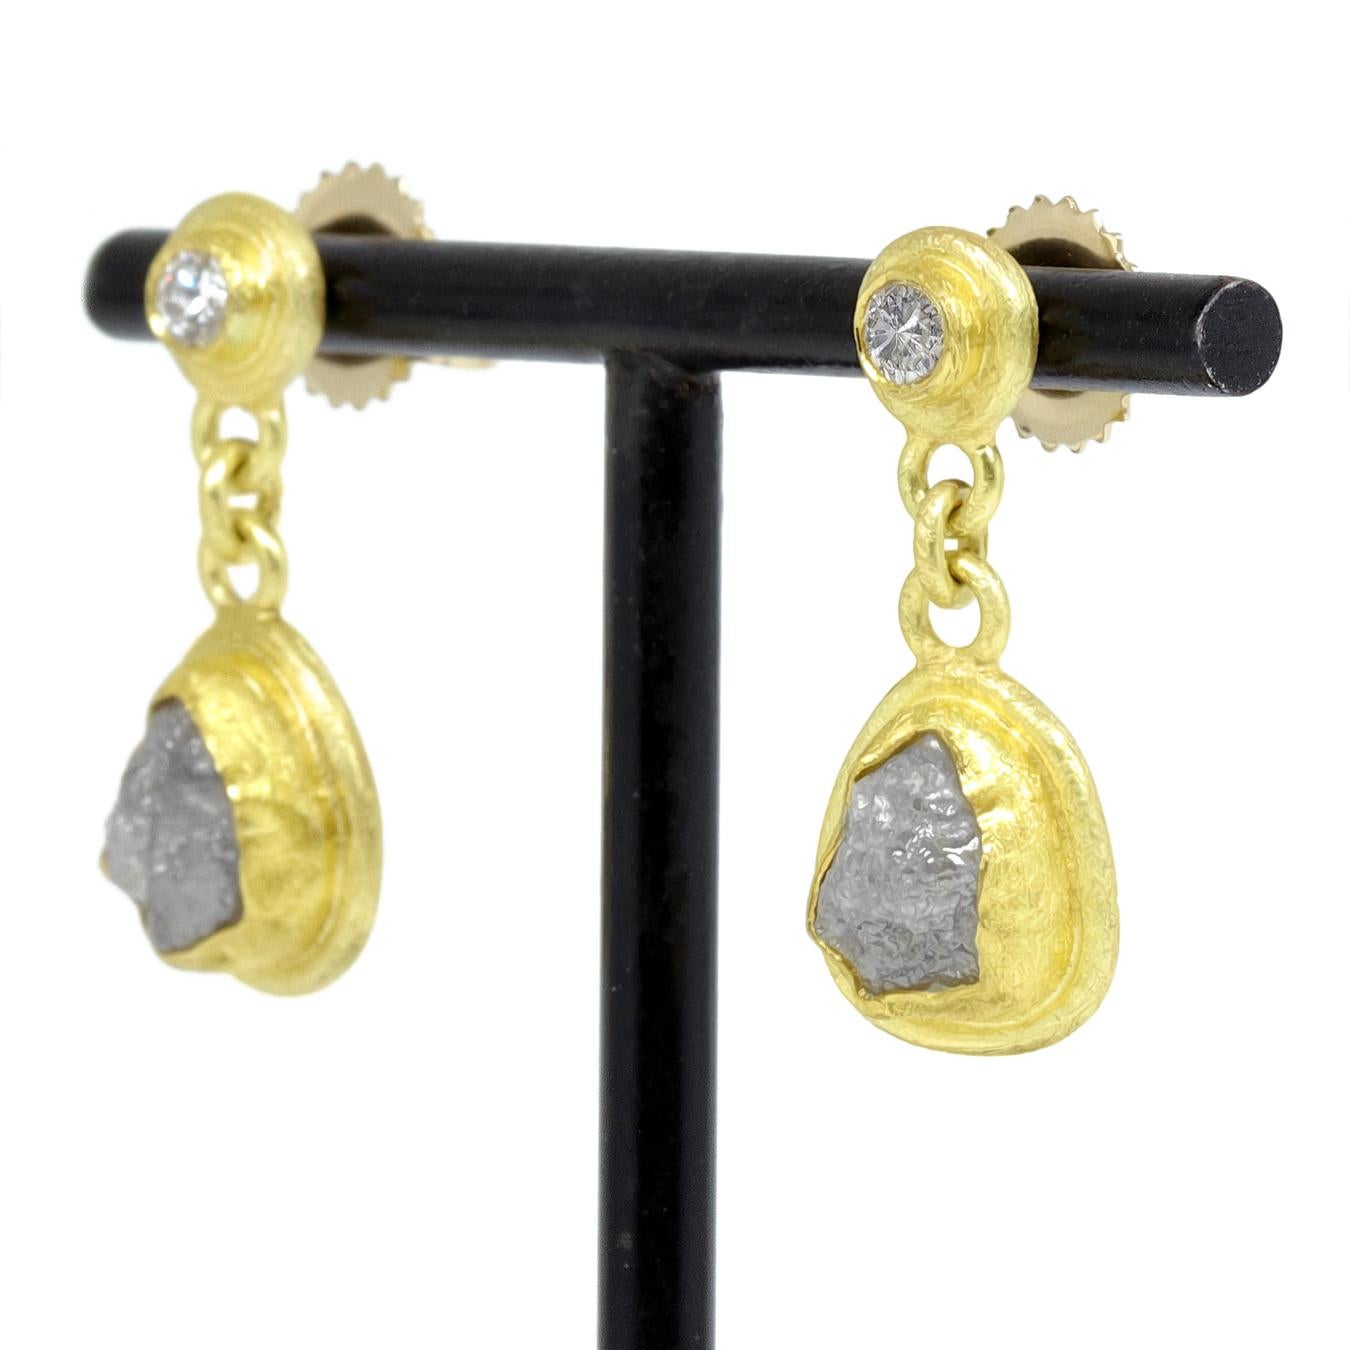 Ces boucles d'oreilles uniques à double diamant, réalisées à la main par l'artiste joaillière primée Petra Class, sont composées d'un diamant taille brillant serti en chaton et d'un diamant brut enveloppé et encadré individuellement dans de l'or